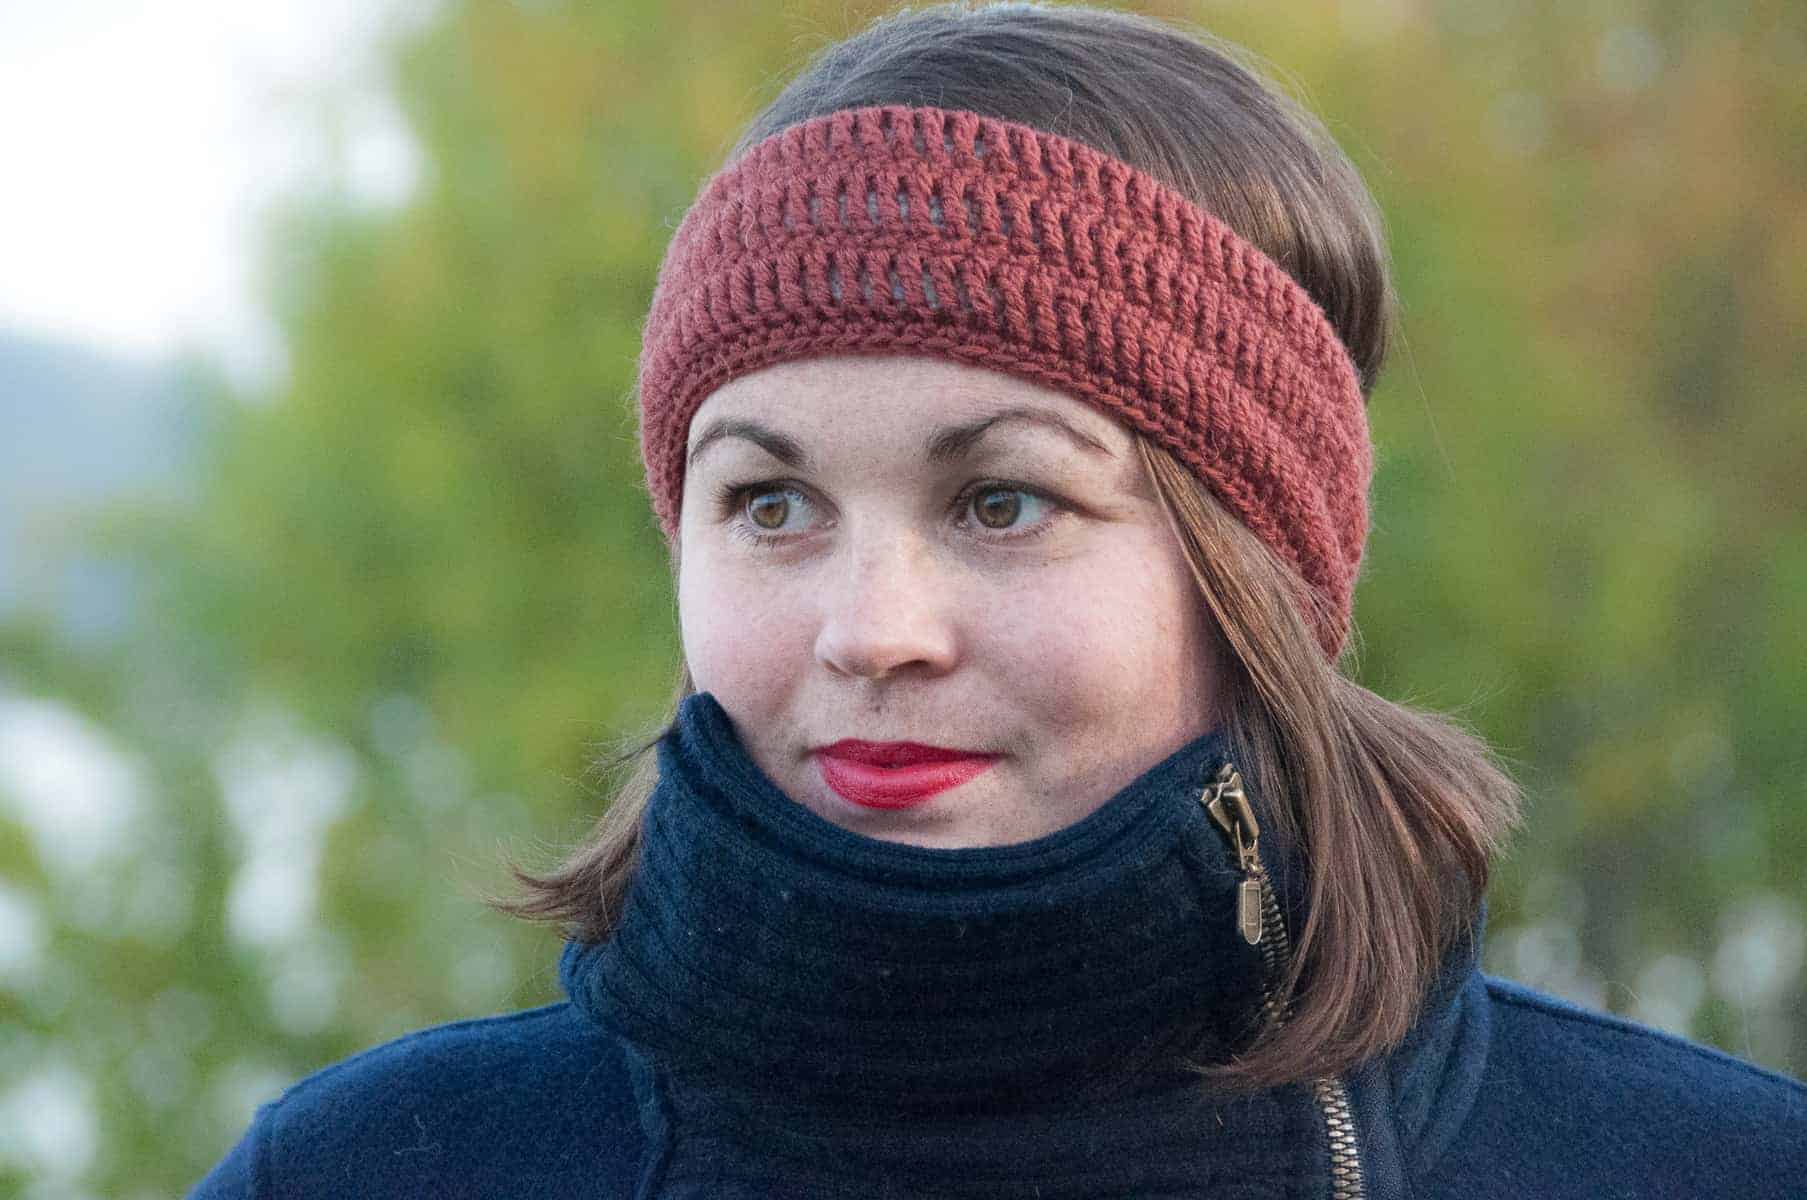 crochet bruma headband, free crochet pattern, rust colored headband modeled, easy crochet pattern